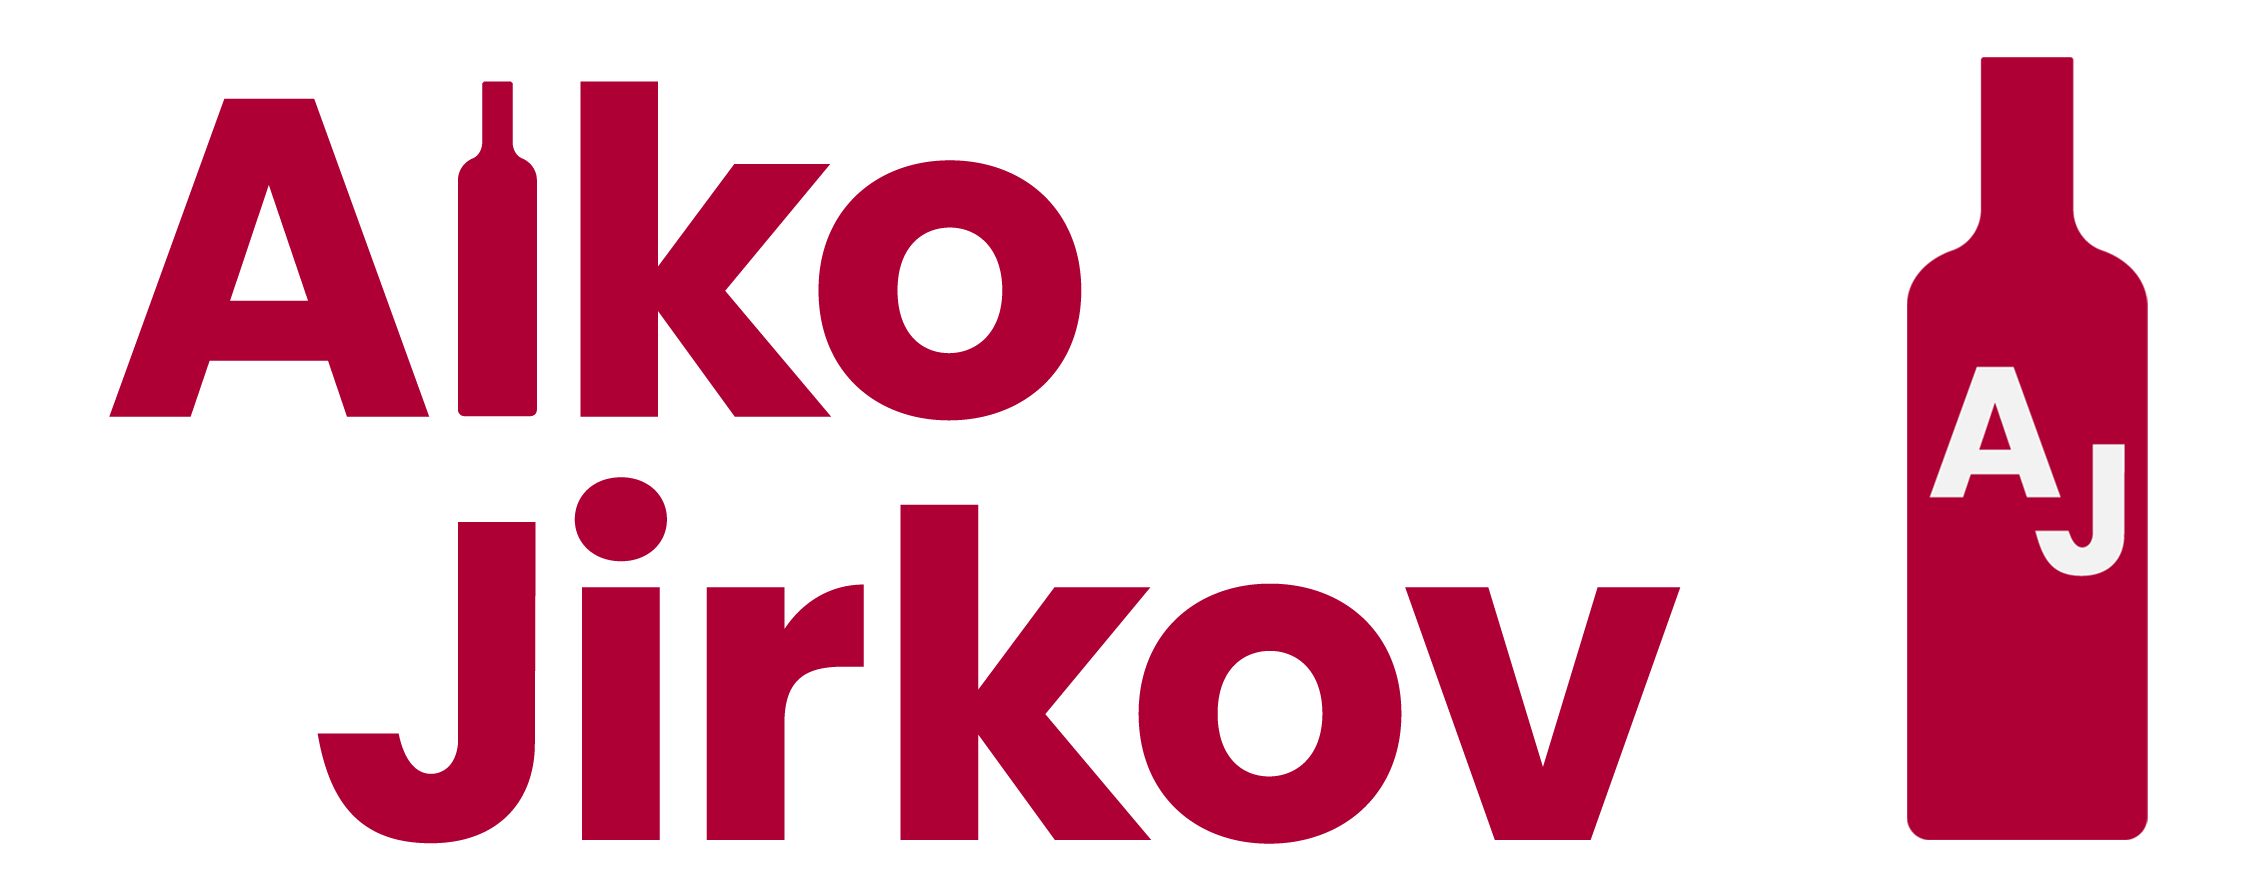 Alkojirkov.cz